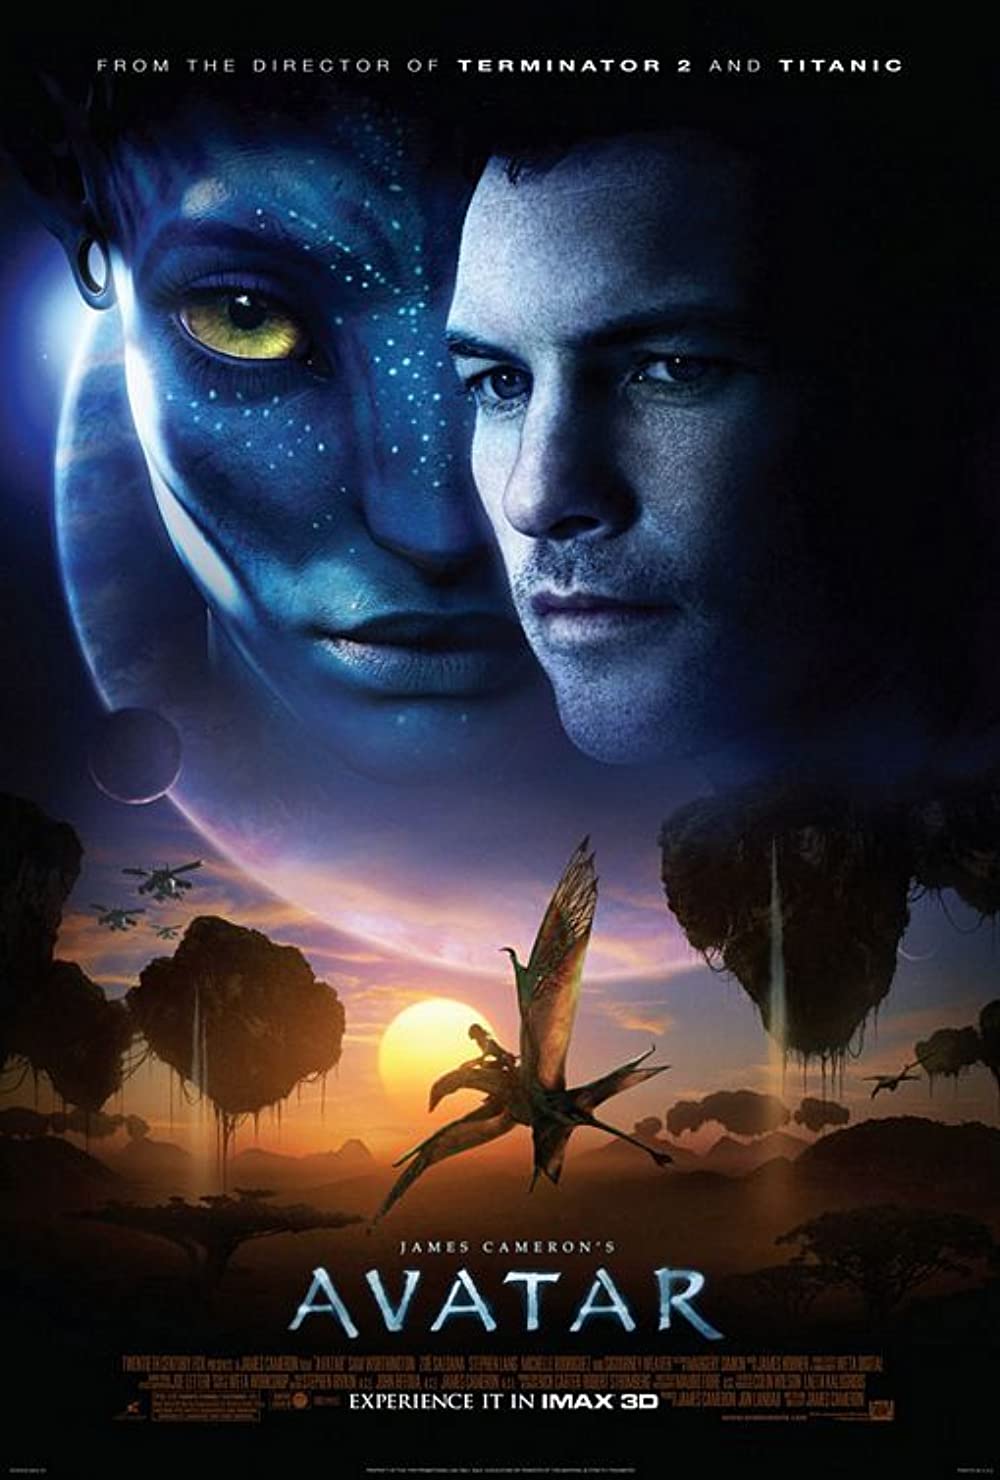 Avatar-Hindi-dubbed-movies được đánh giá cao bởi khán giả Ấn Độ với thể loại phim hành động, phiêu lưu và khoa học viễn tưởng hoành tráng. Phim bắt đầu lấy cảm hứng từ bộ phim năm 2009 và giờ đây đã được phát hành với phiên bản lồng tiếng Hindi. Hãy xem hình ảnh để trải nghiệm những pha hành động đáng kinh ngạc.